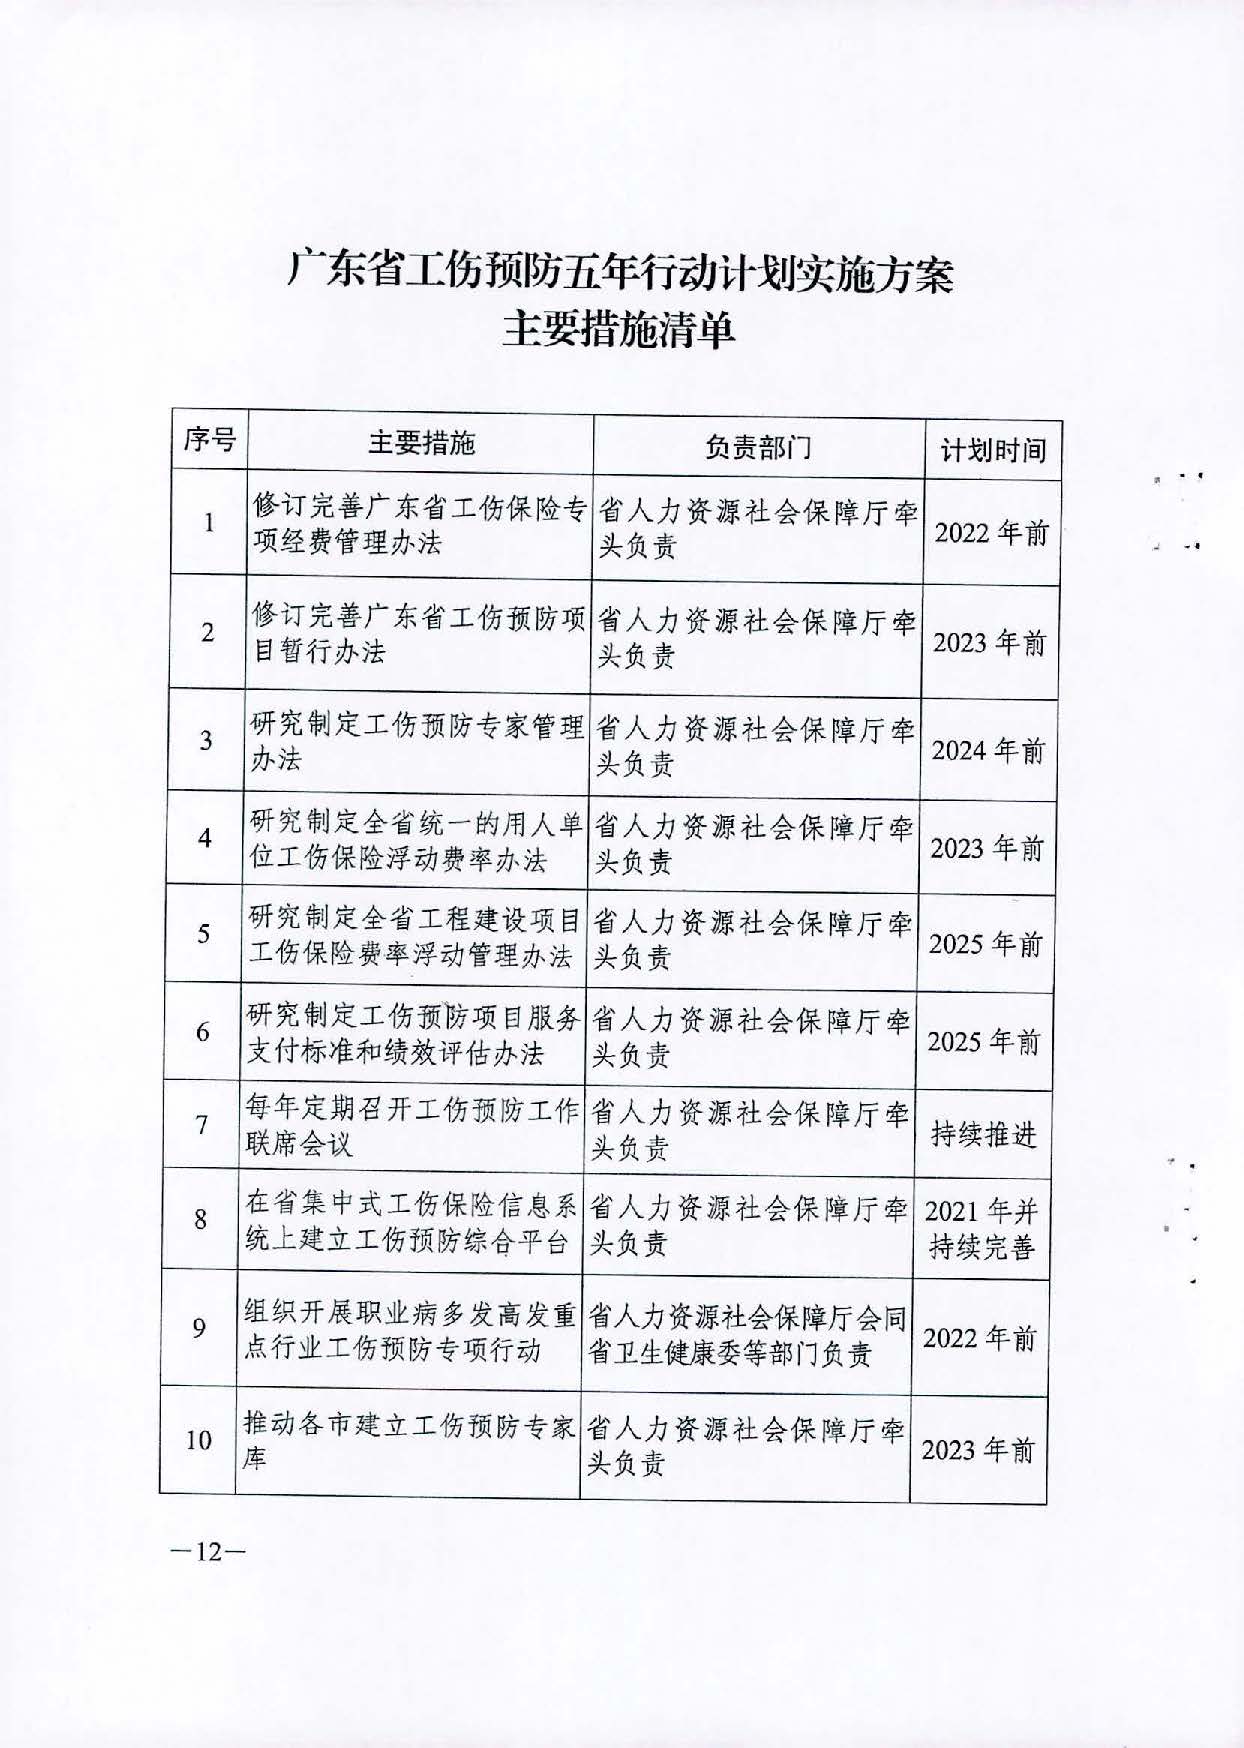 转发关于印发广东省工伤预防五年行动计划实施方案 (2021-2025年)的通知_页面_14.jpg